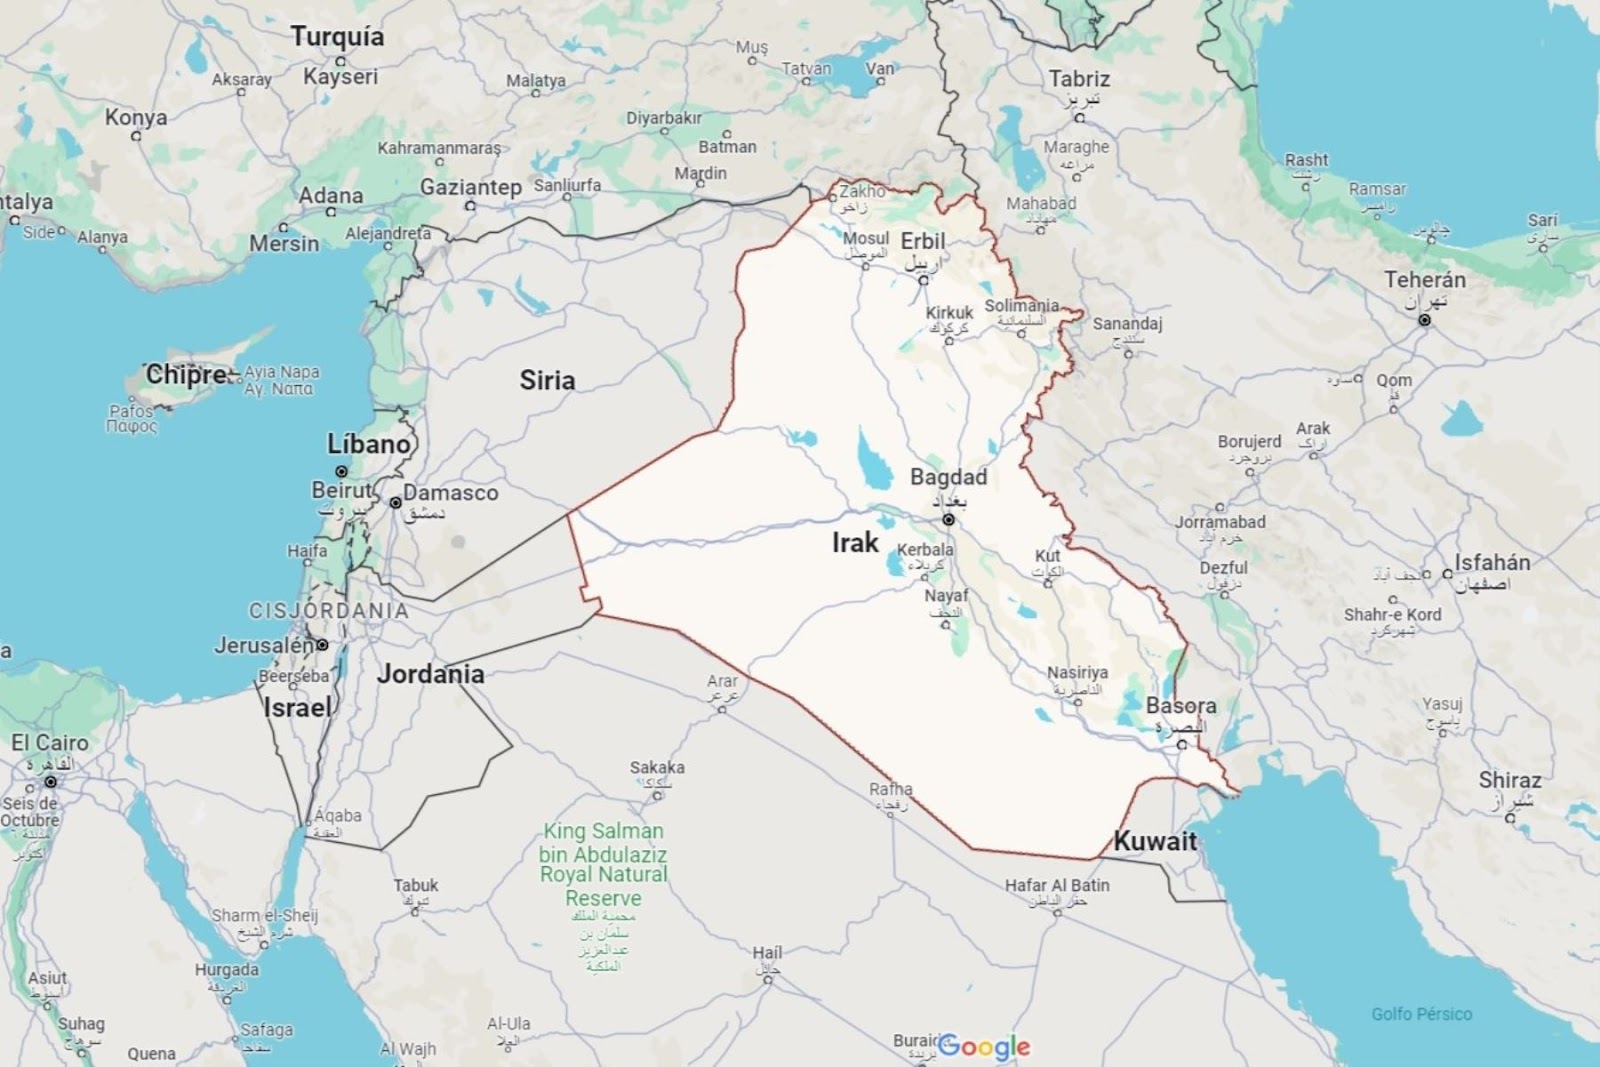 Mapa de localización de la ciudad de Bagdad, capital de Irak. Imagen: Google Maps.